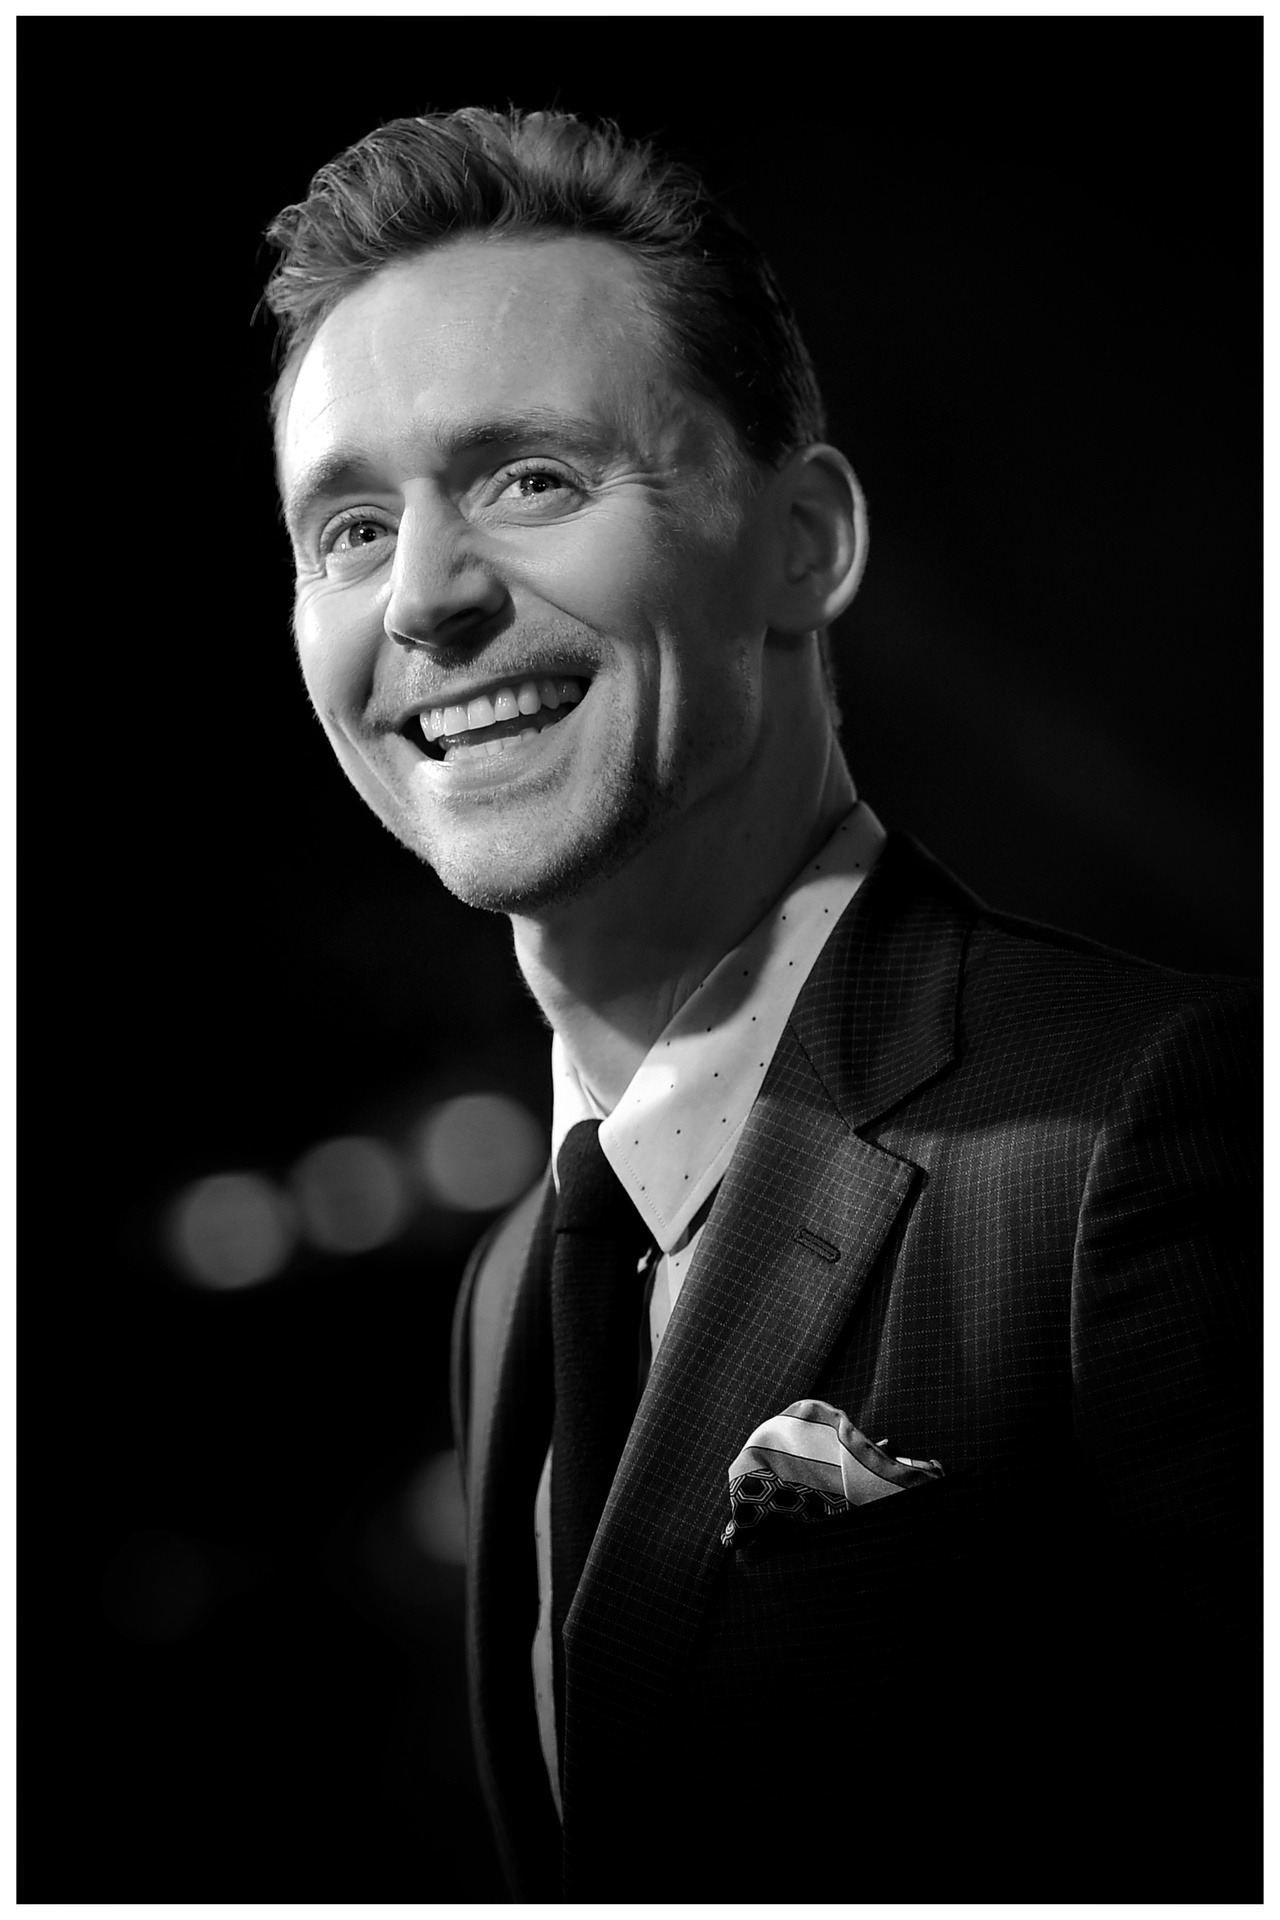 tom hiddleston laughing